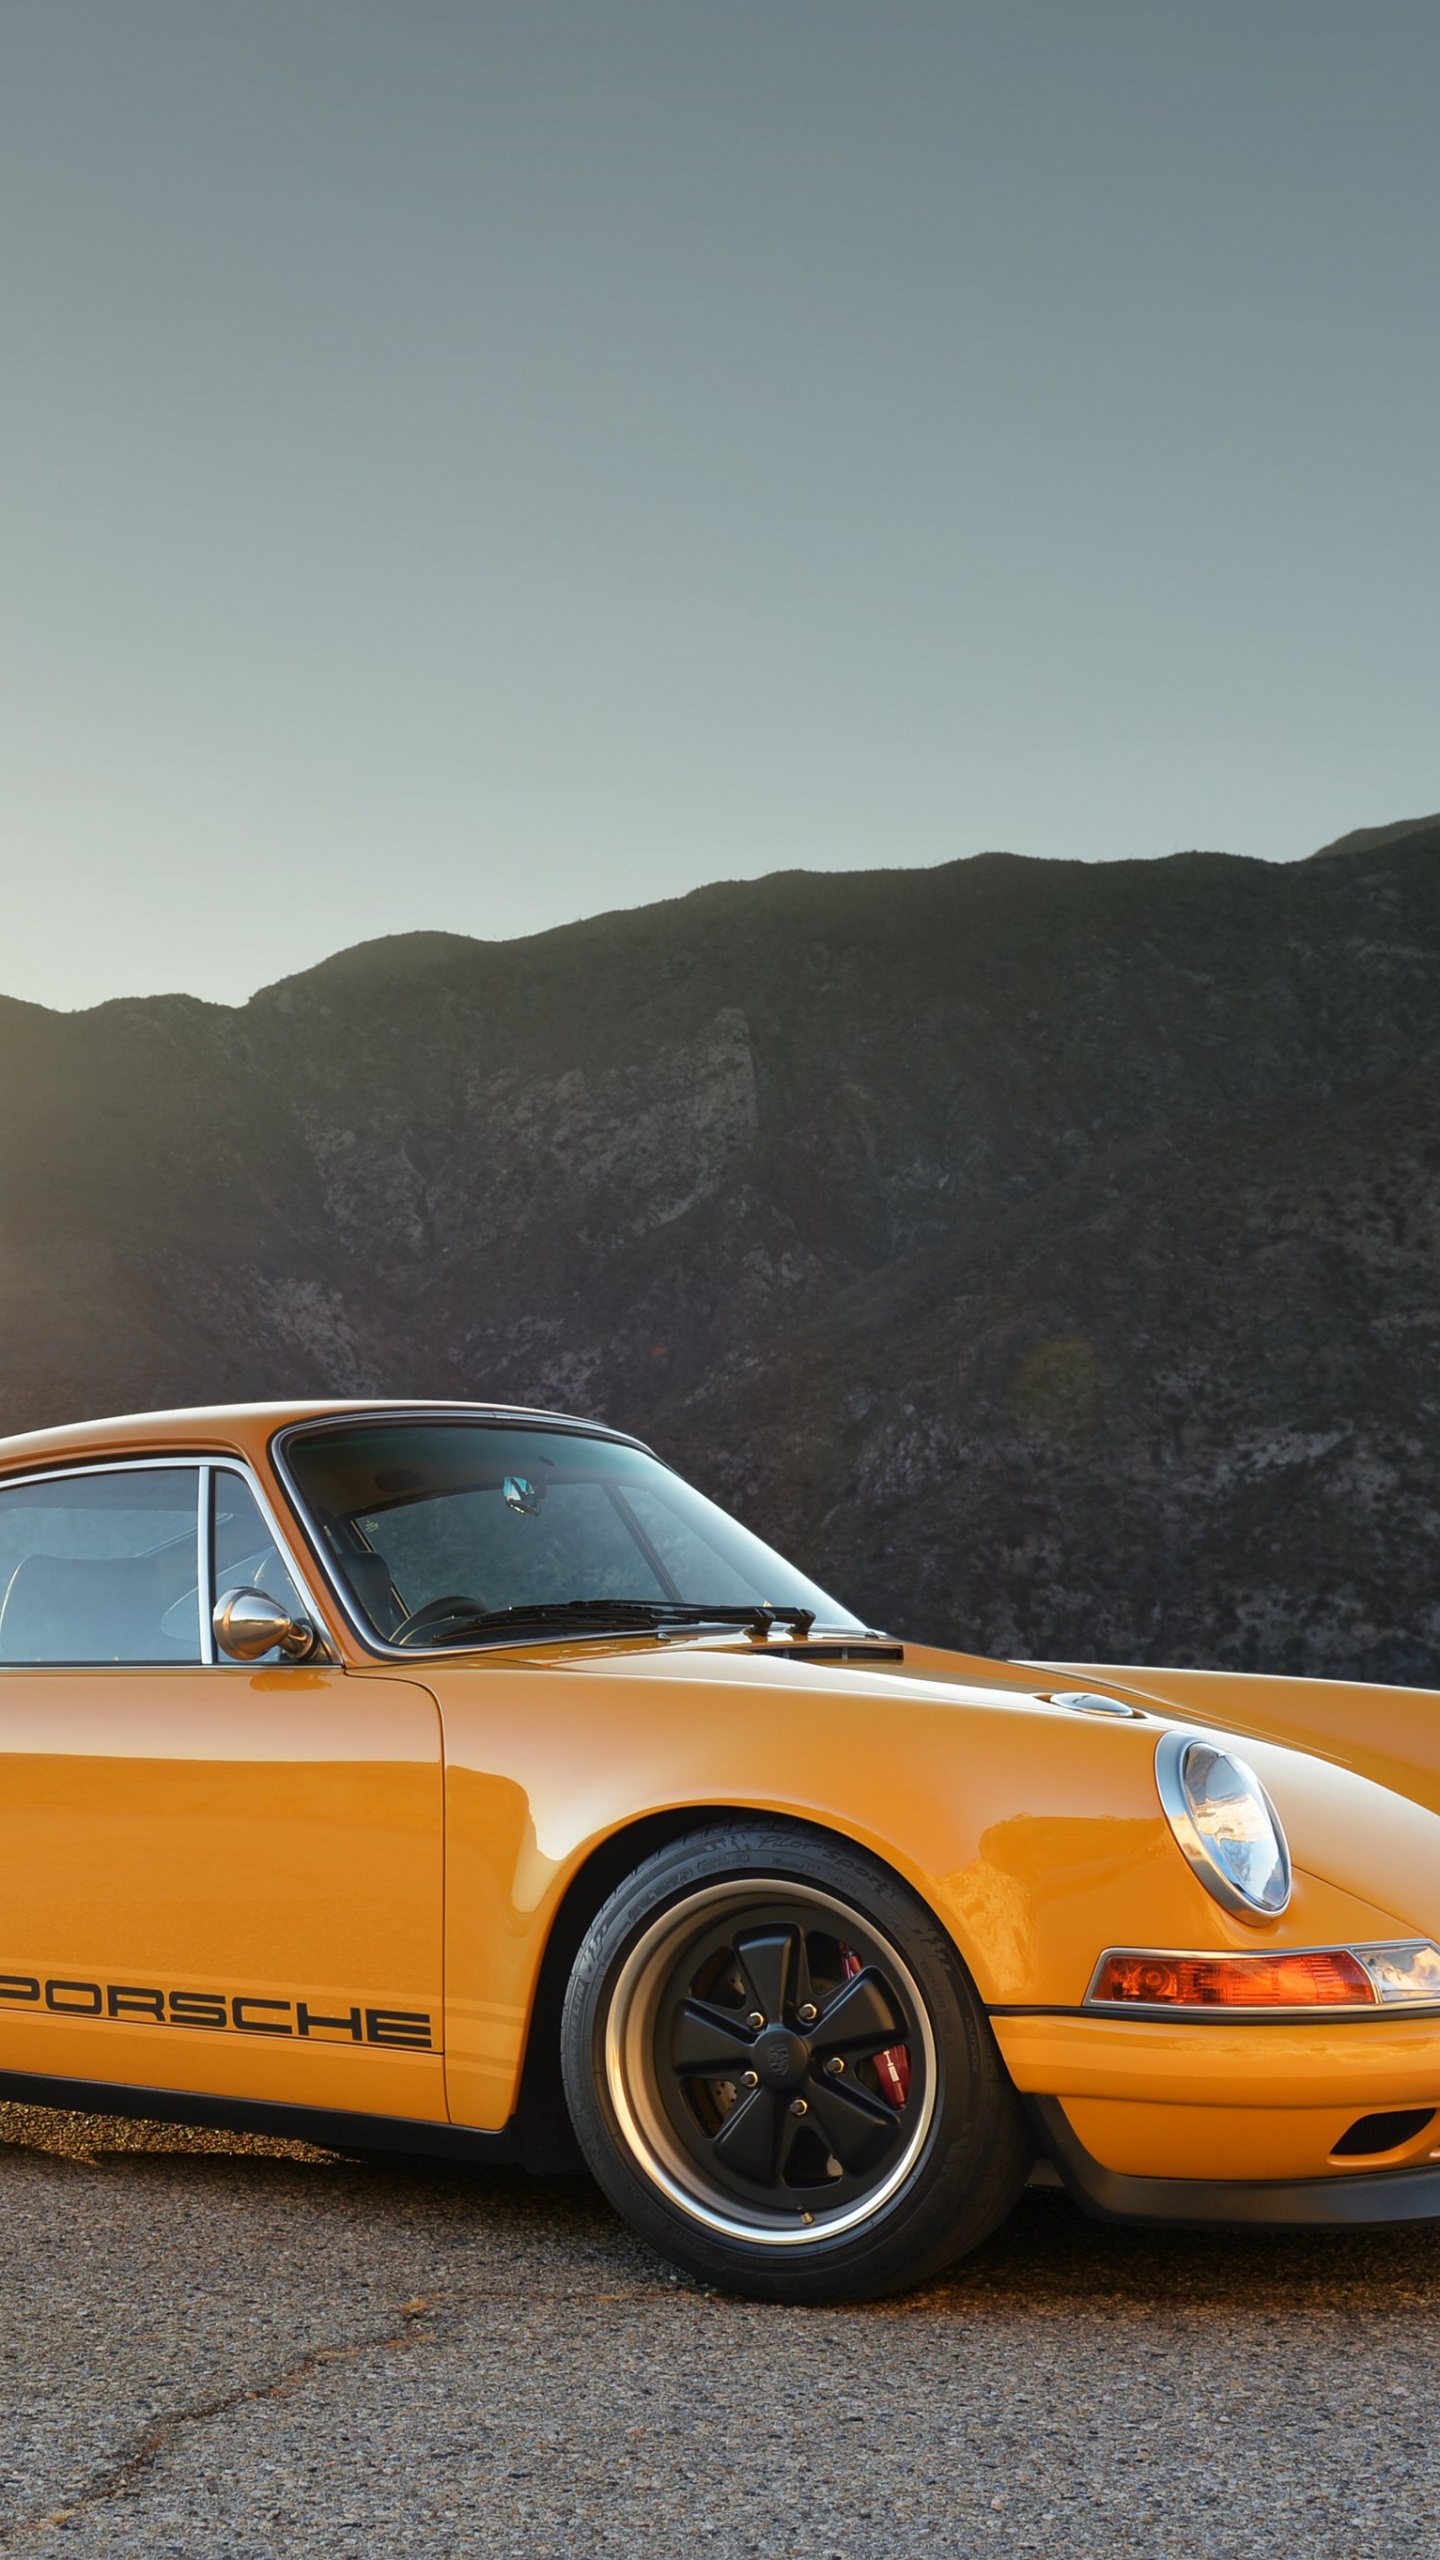 Porsche 911 Amarillo Sobre Marrón Camino de Tierra Durante el Día. Wallpaper in 1440x2560 Resolution